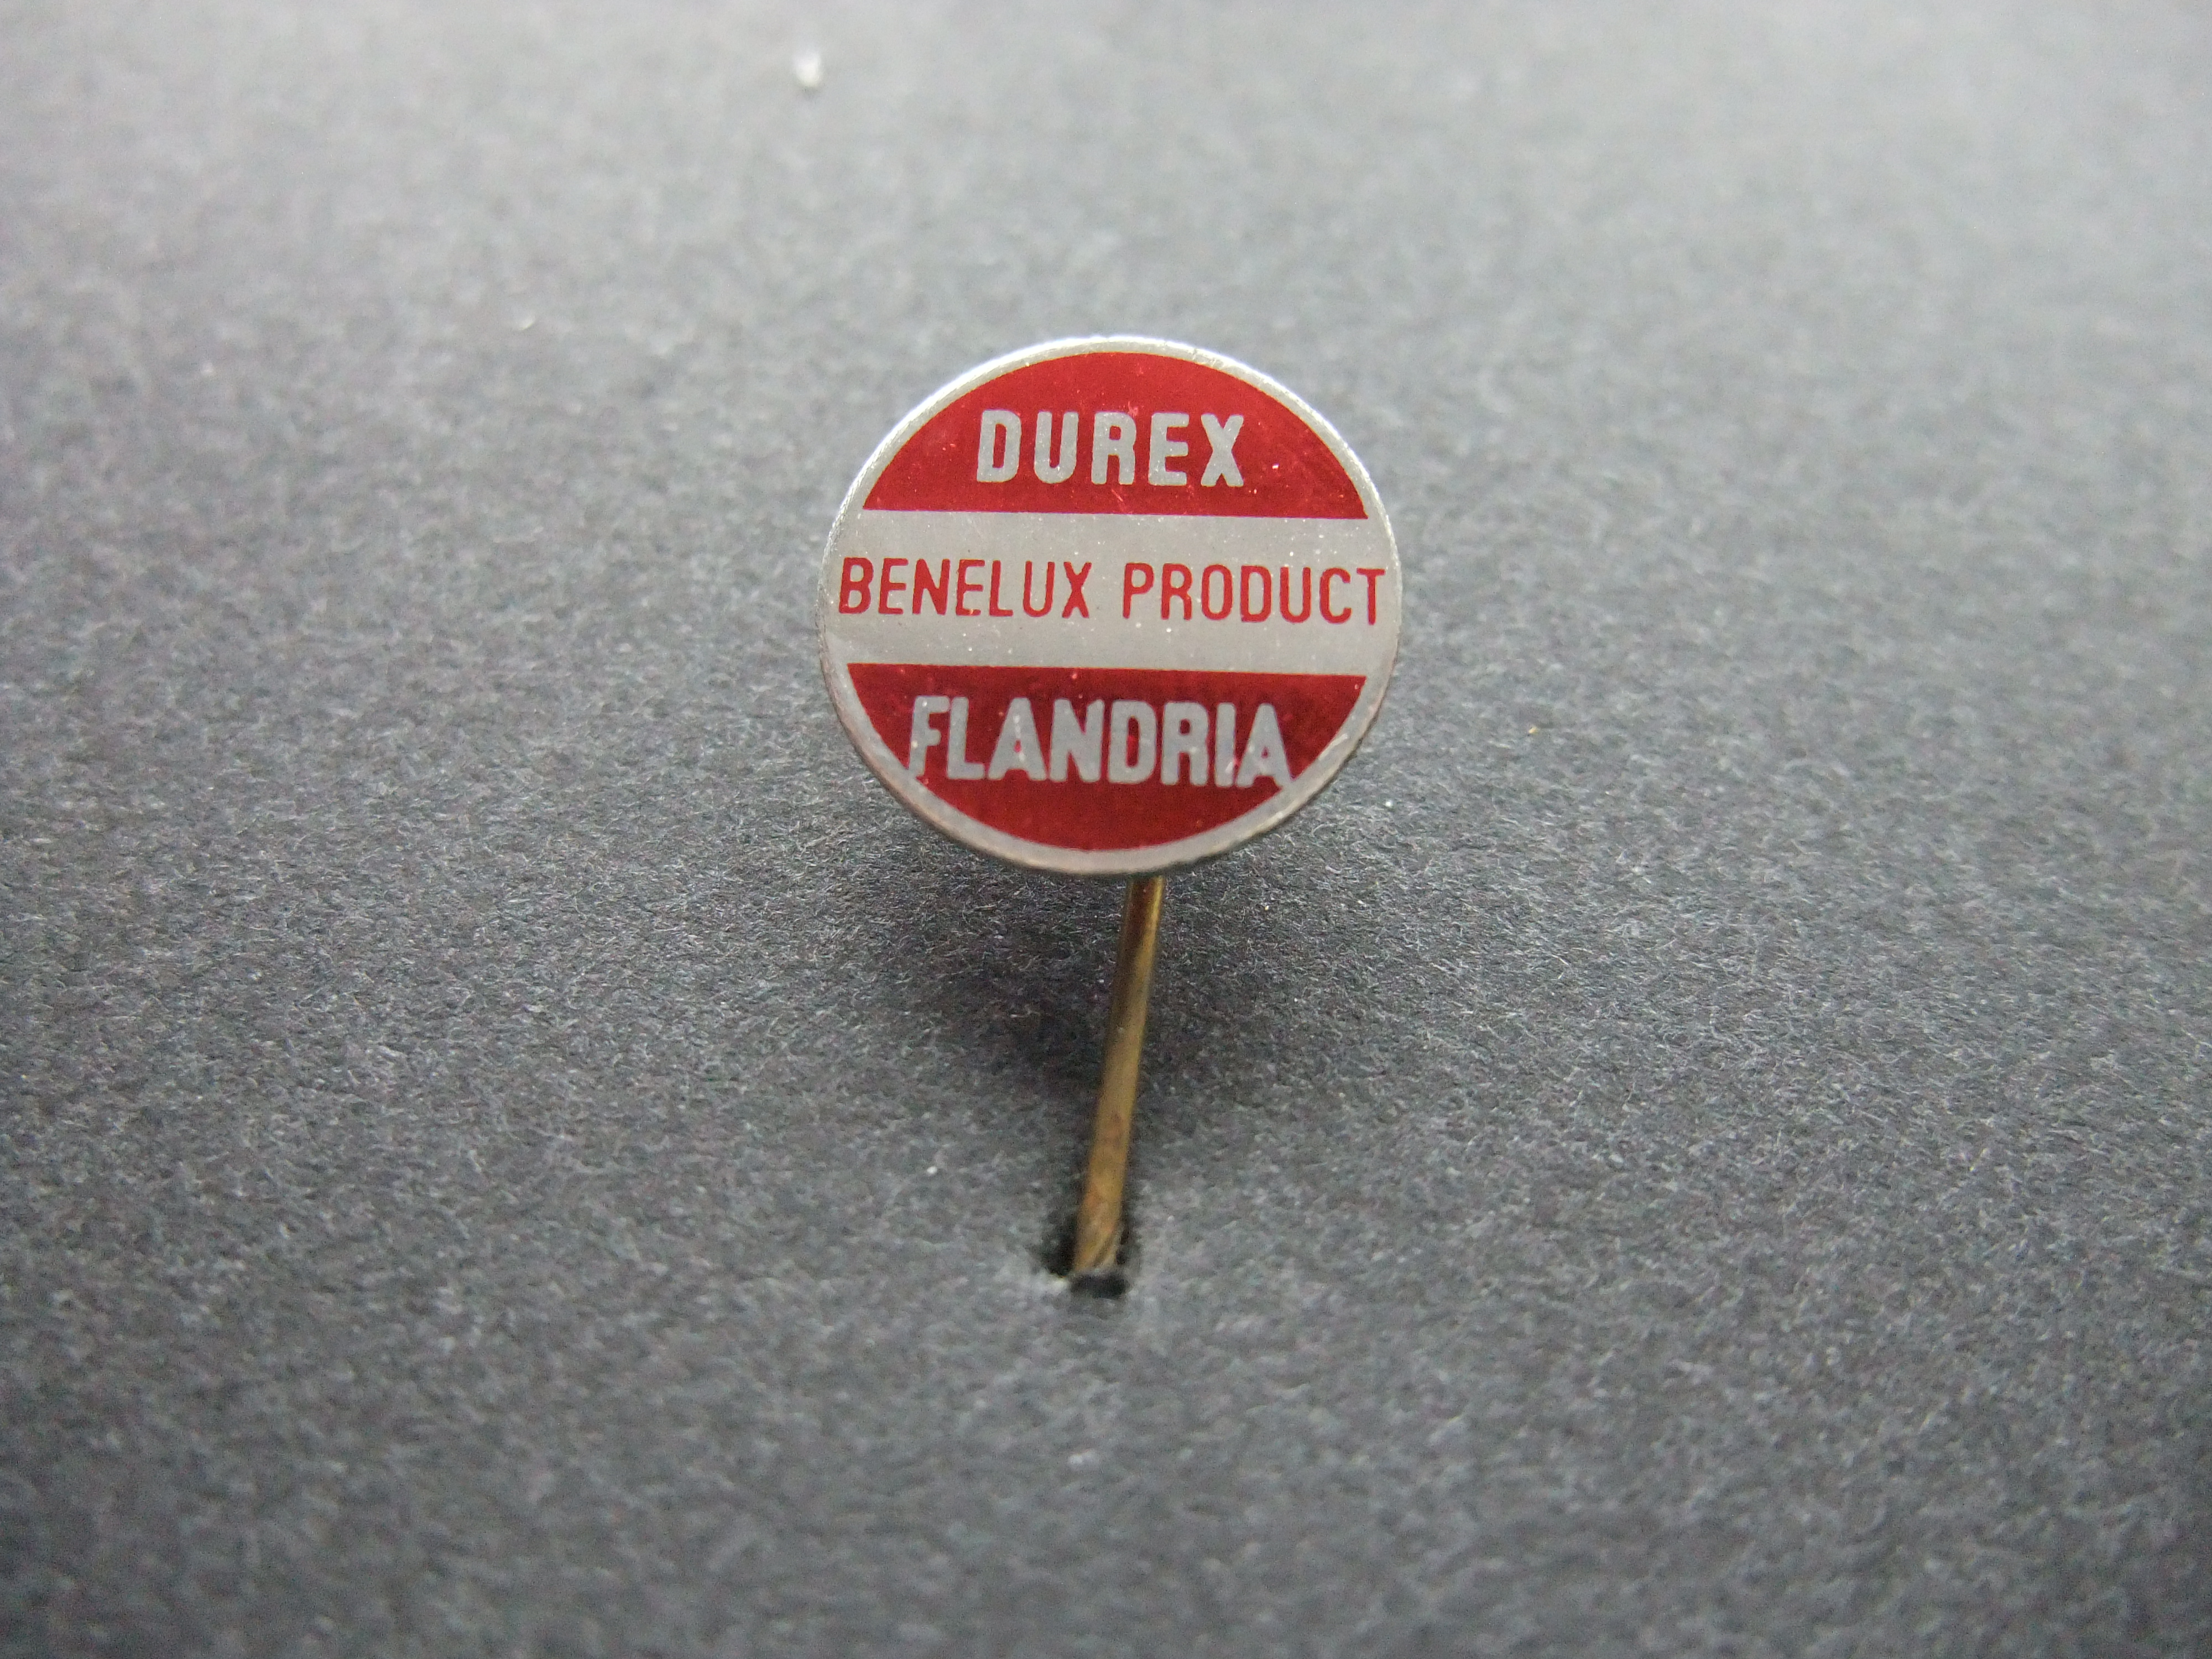 Durex Benelux product Flandria